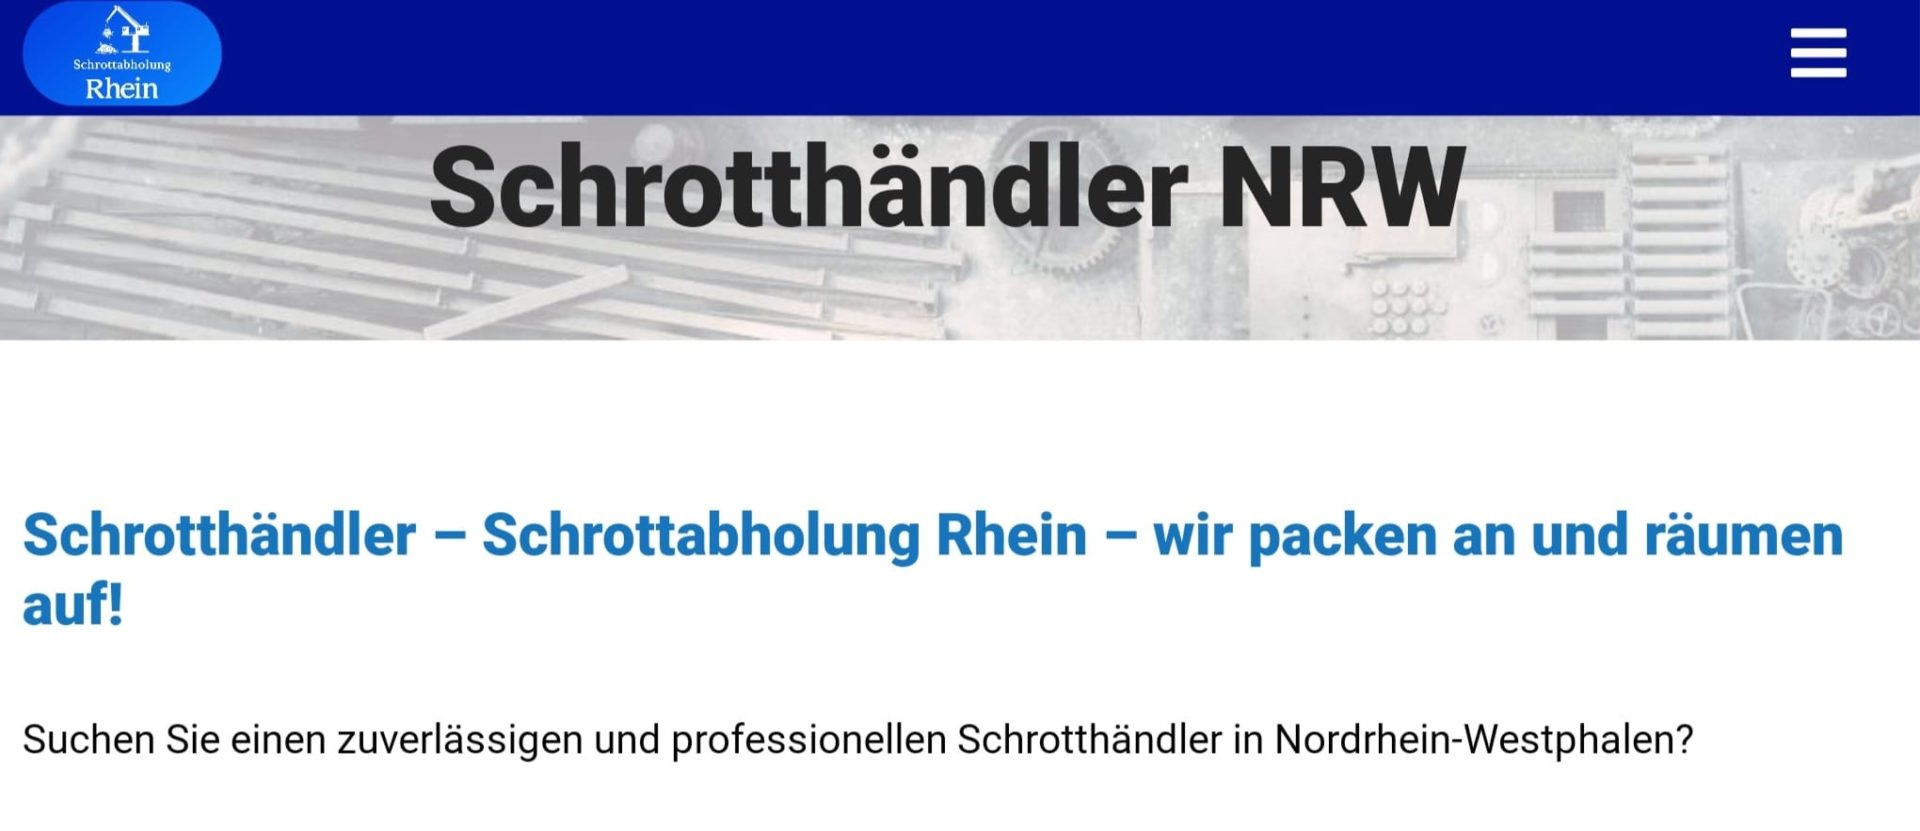 Schrotthändler NRW-d7a46363